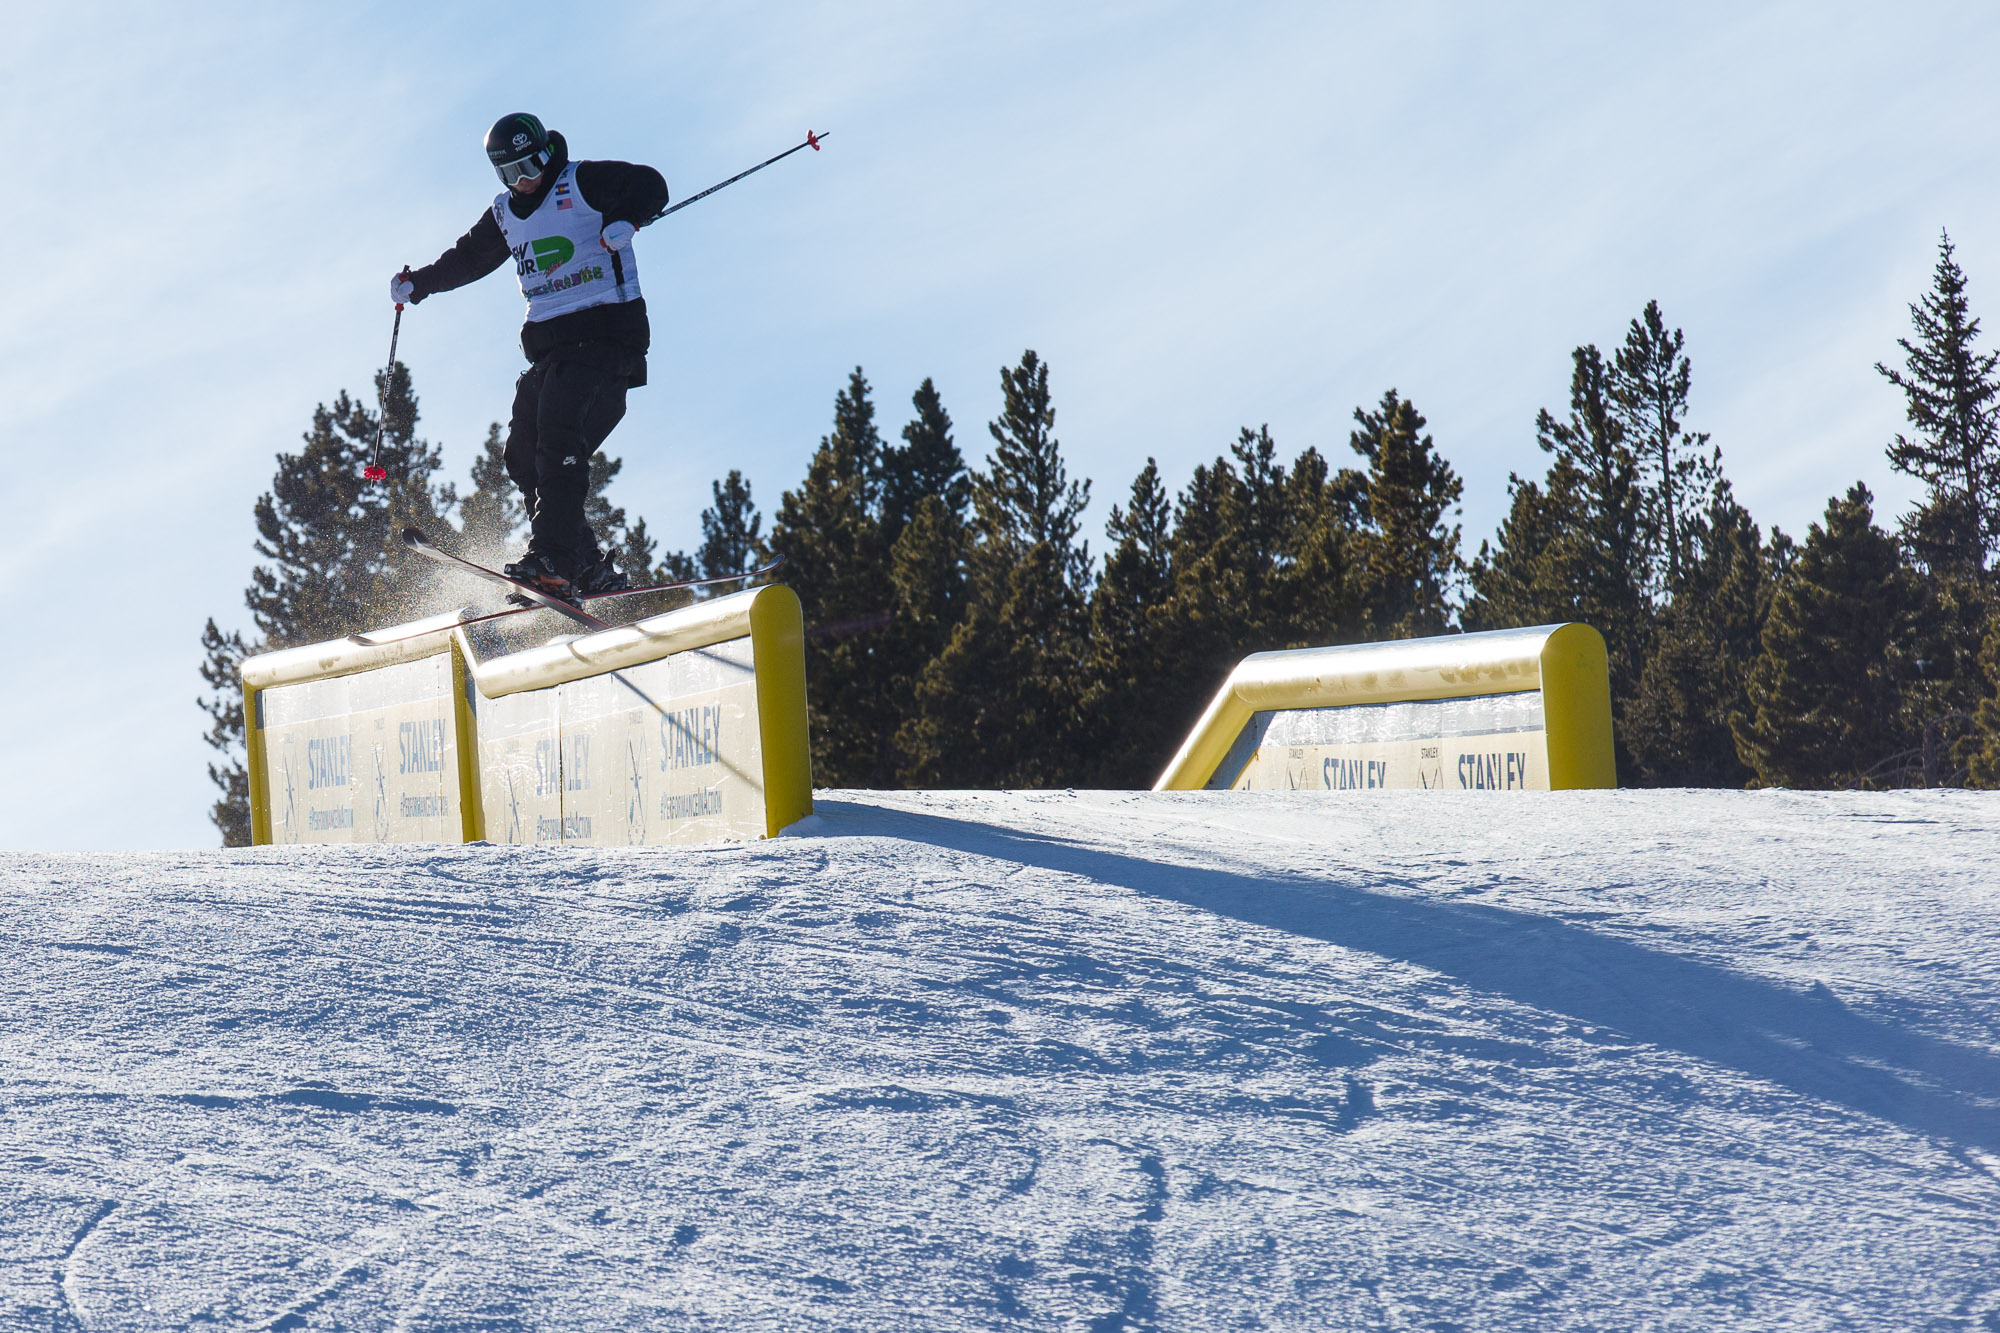 Gus_kenworthy_team_challenge_snowboard_slopestyle_jumps_dew_tour_breckenridge_kanights_01